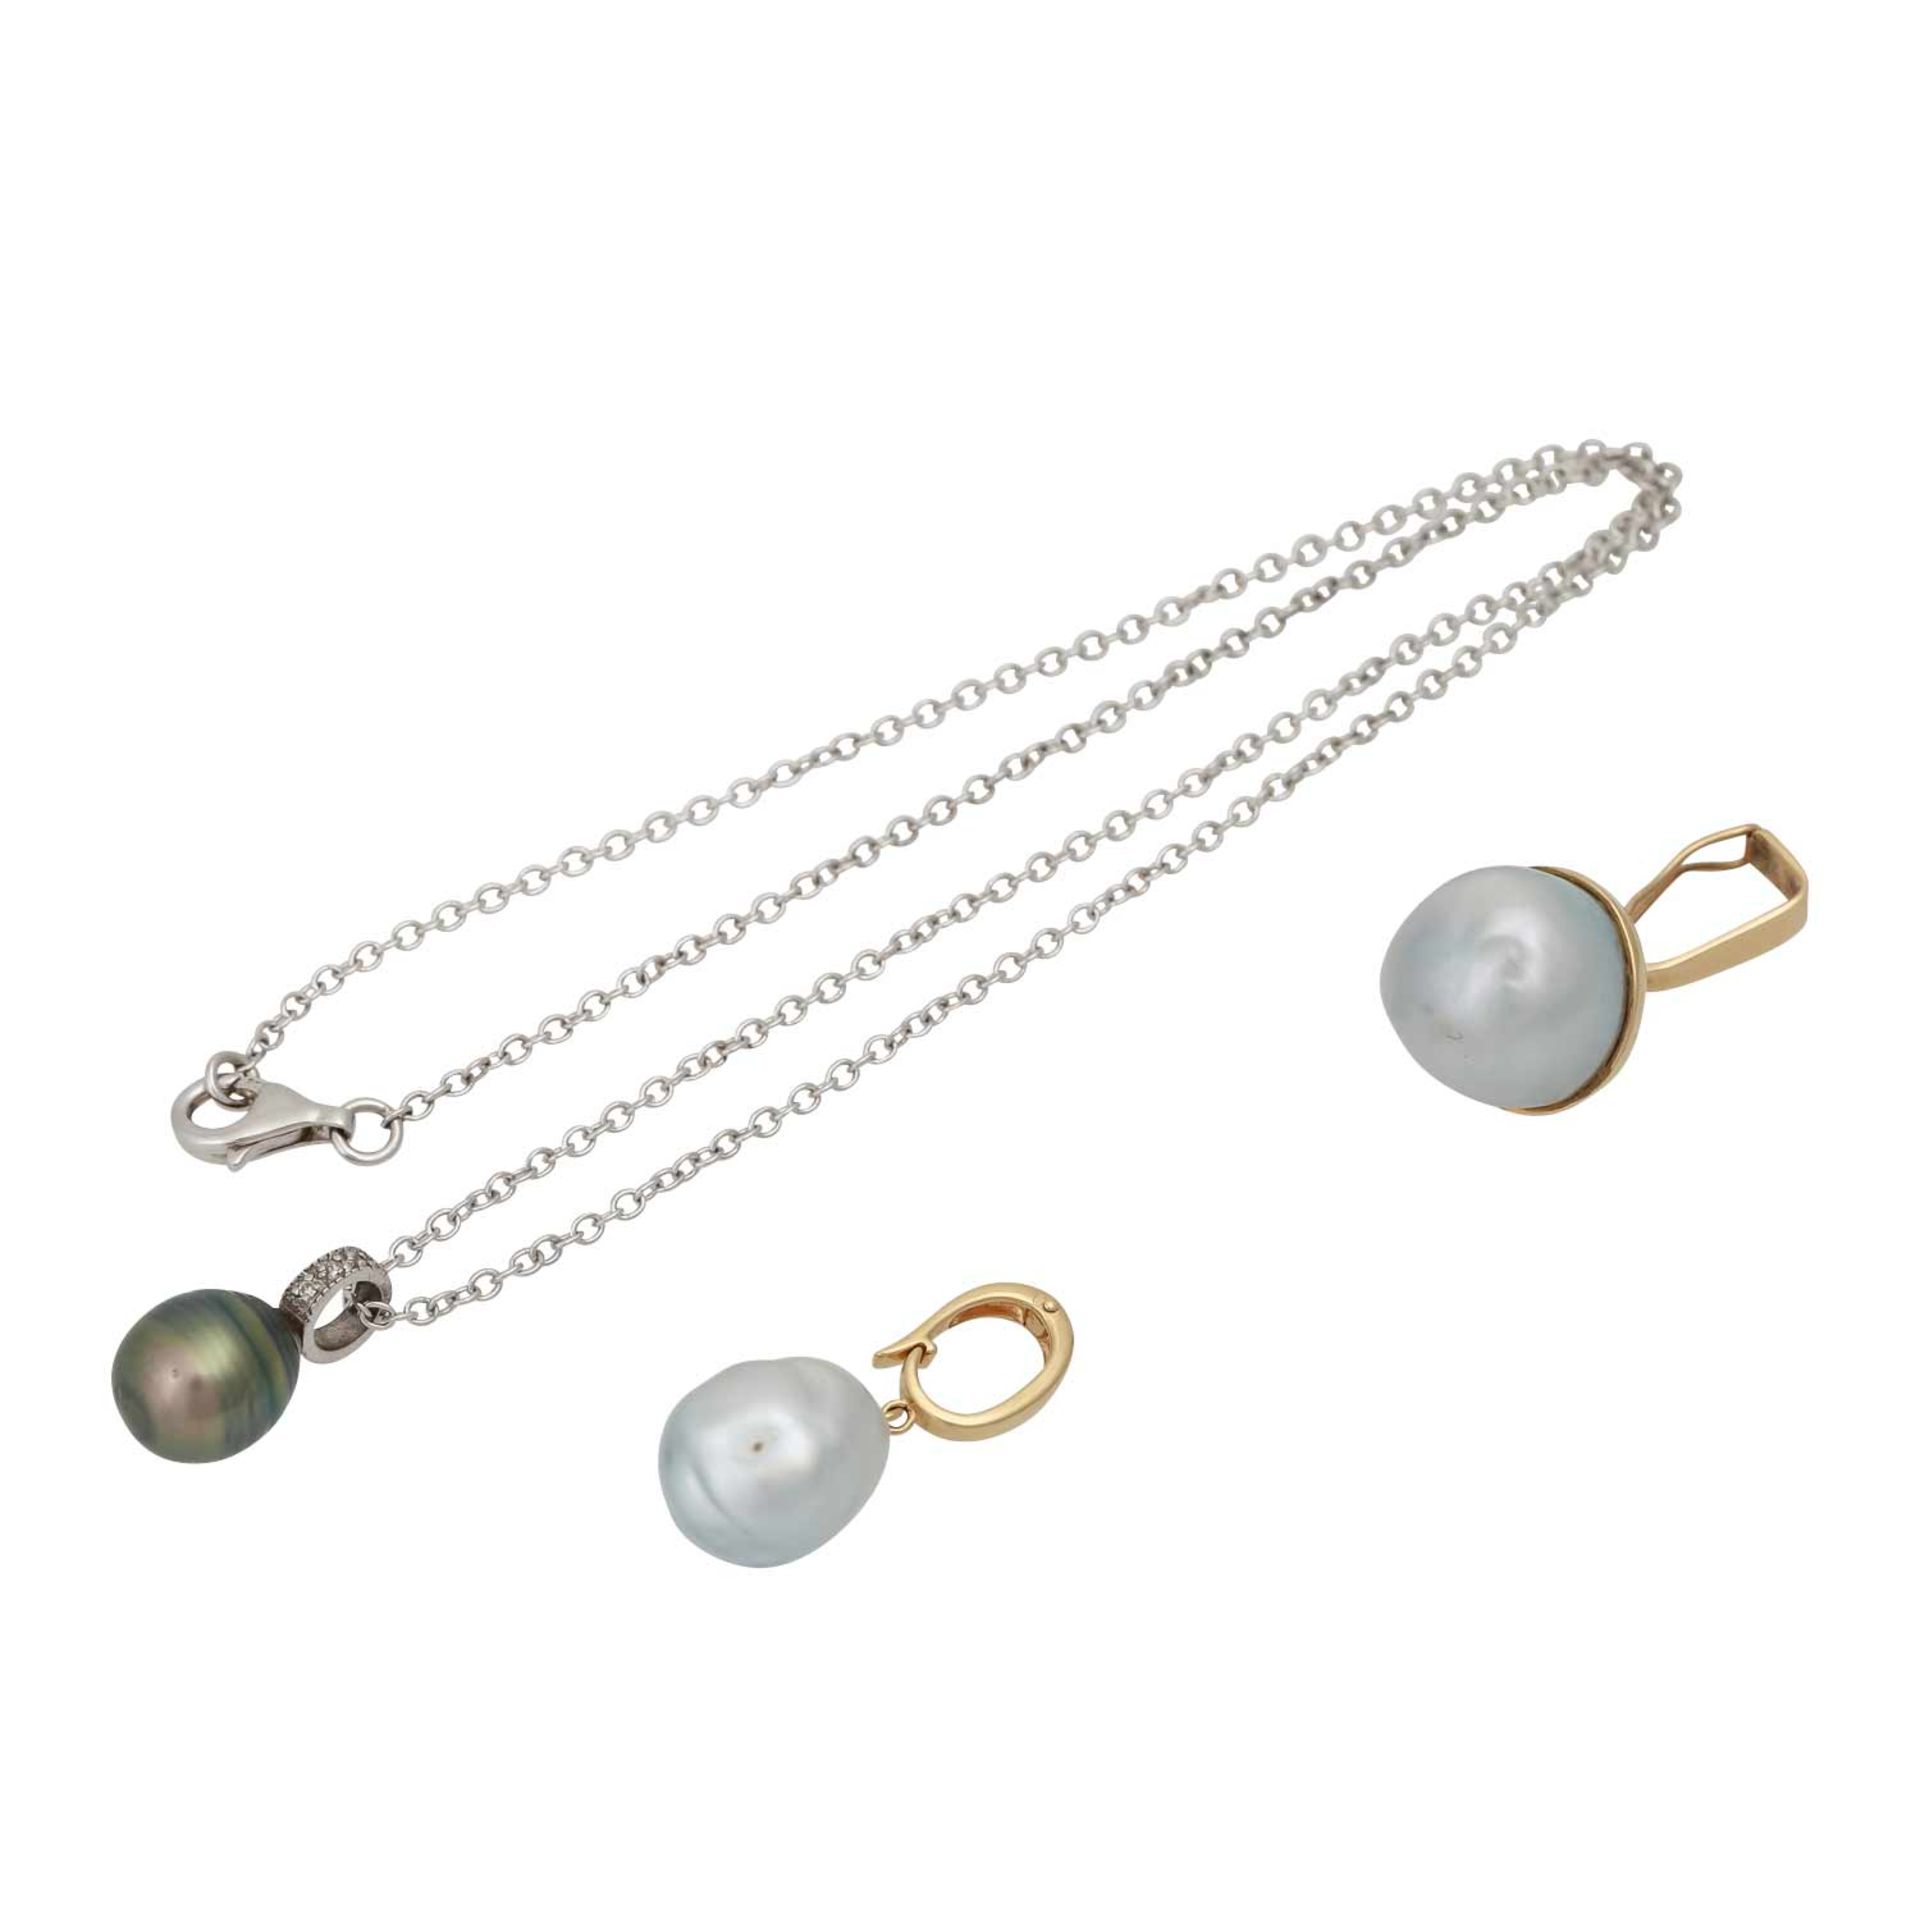 Kette mit 3 verschiedenen Perlanhängern,Zuchtperlen von ca. 9,7-13,8 mm, 1x Silber, 2x GG 14K,